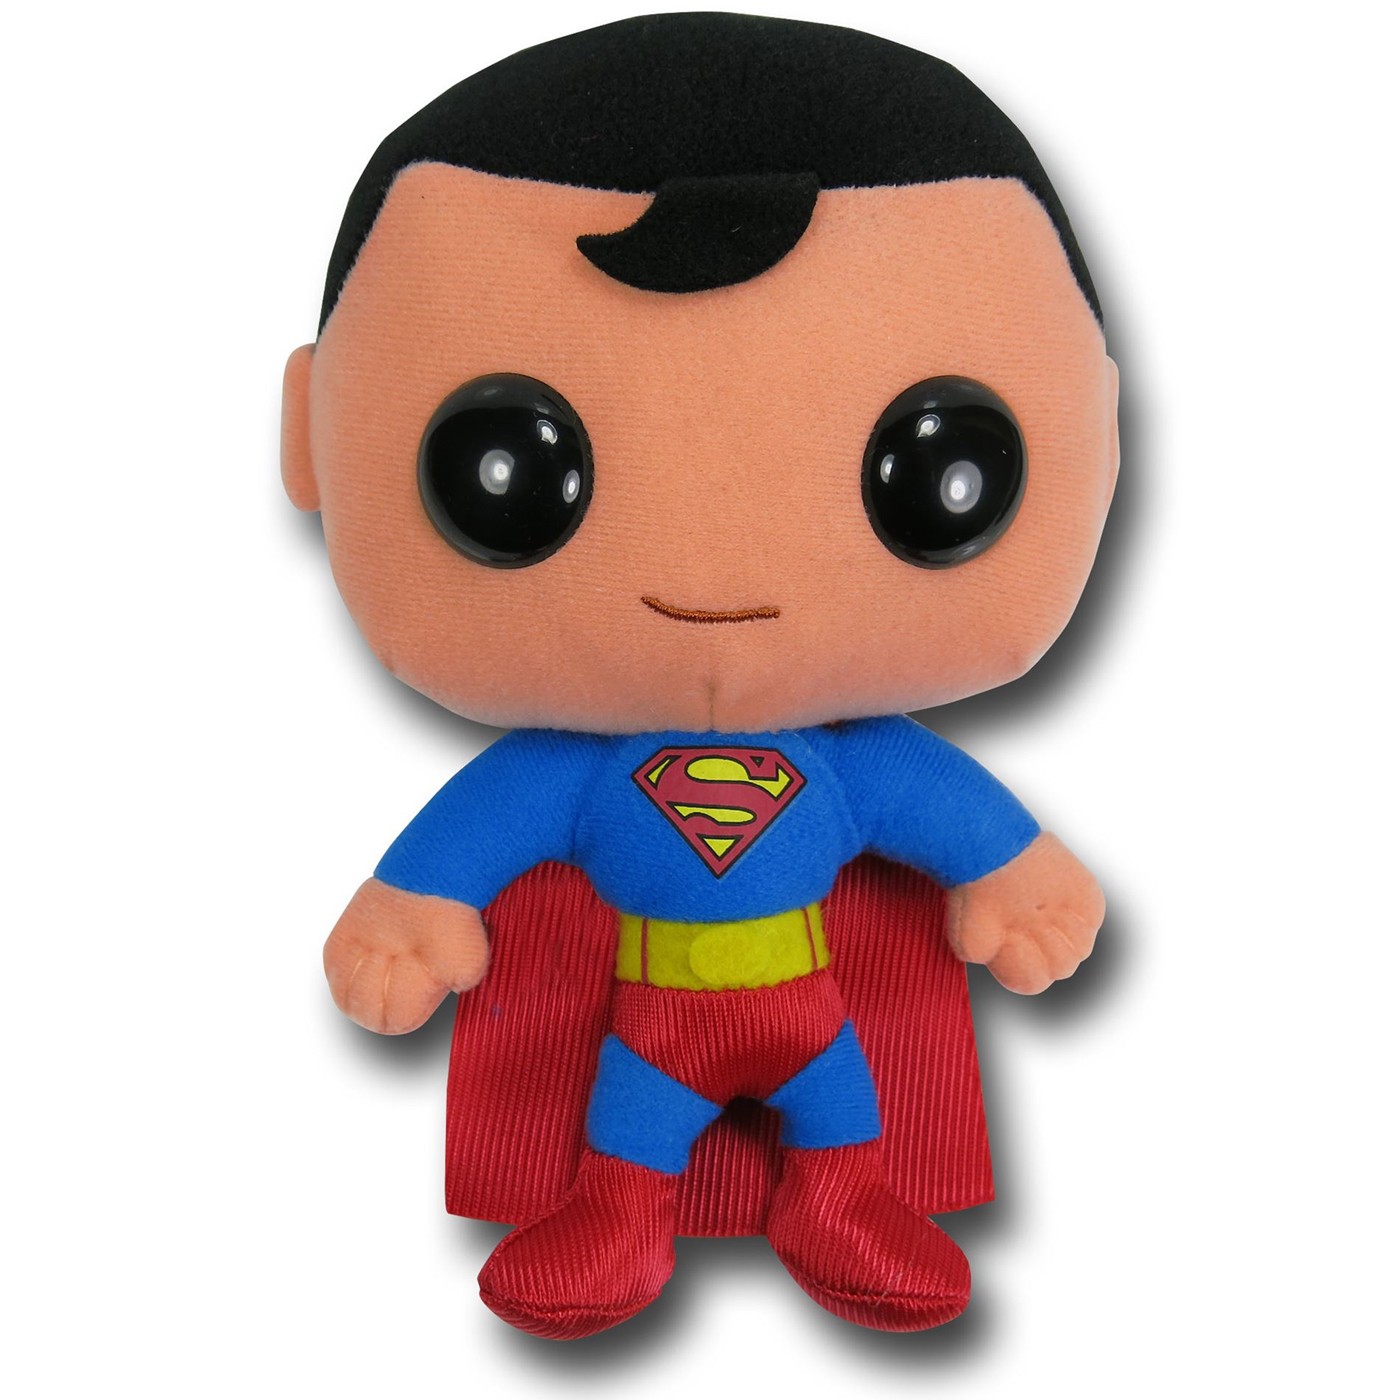 Superman DC Universe Plush Toy